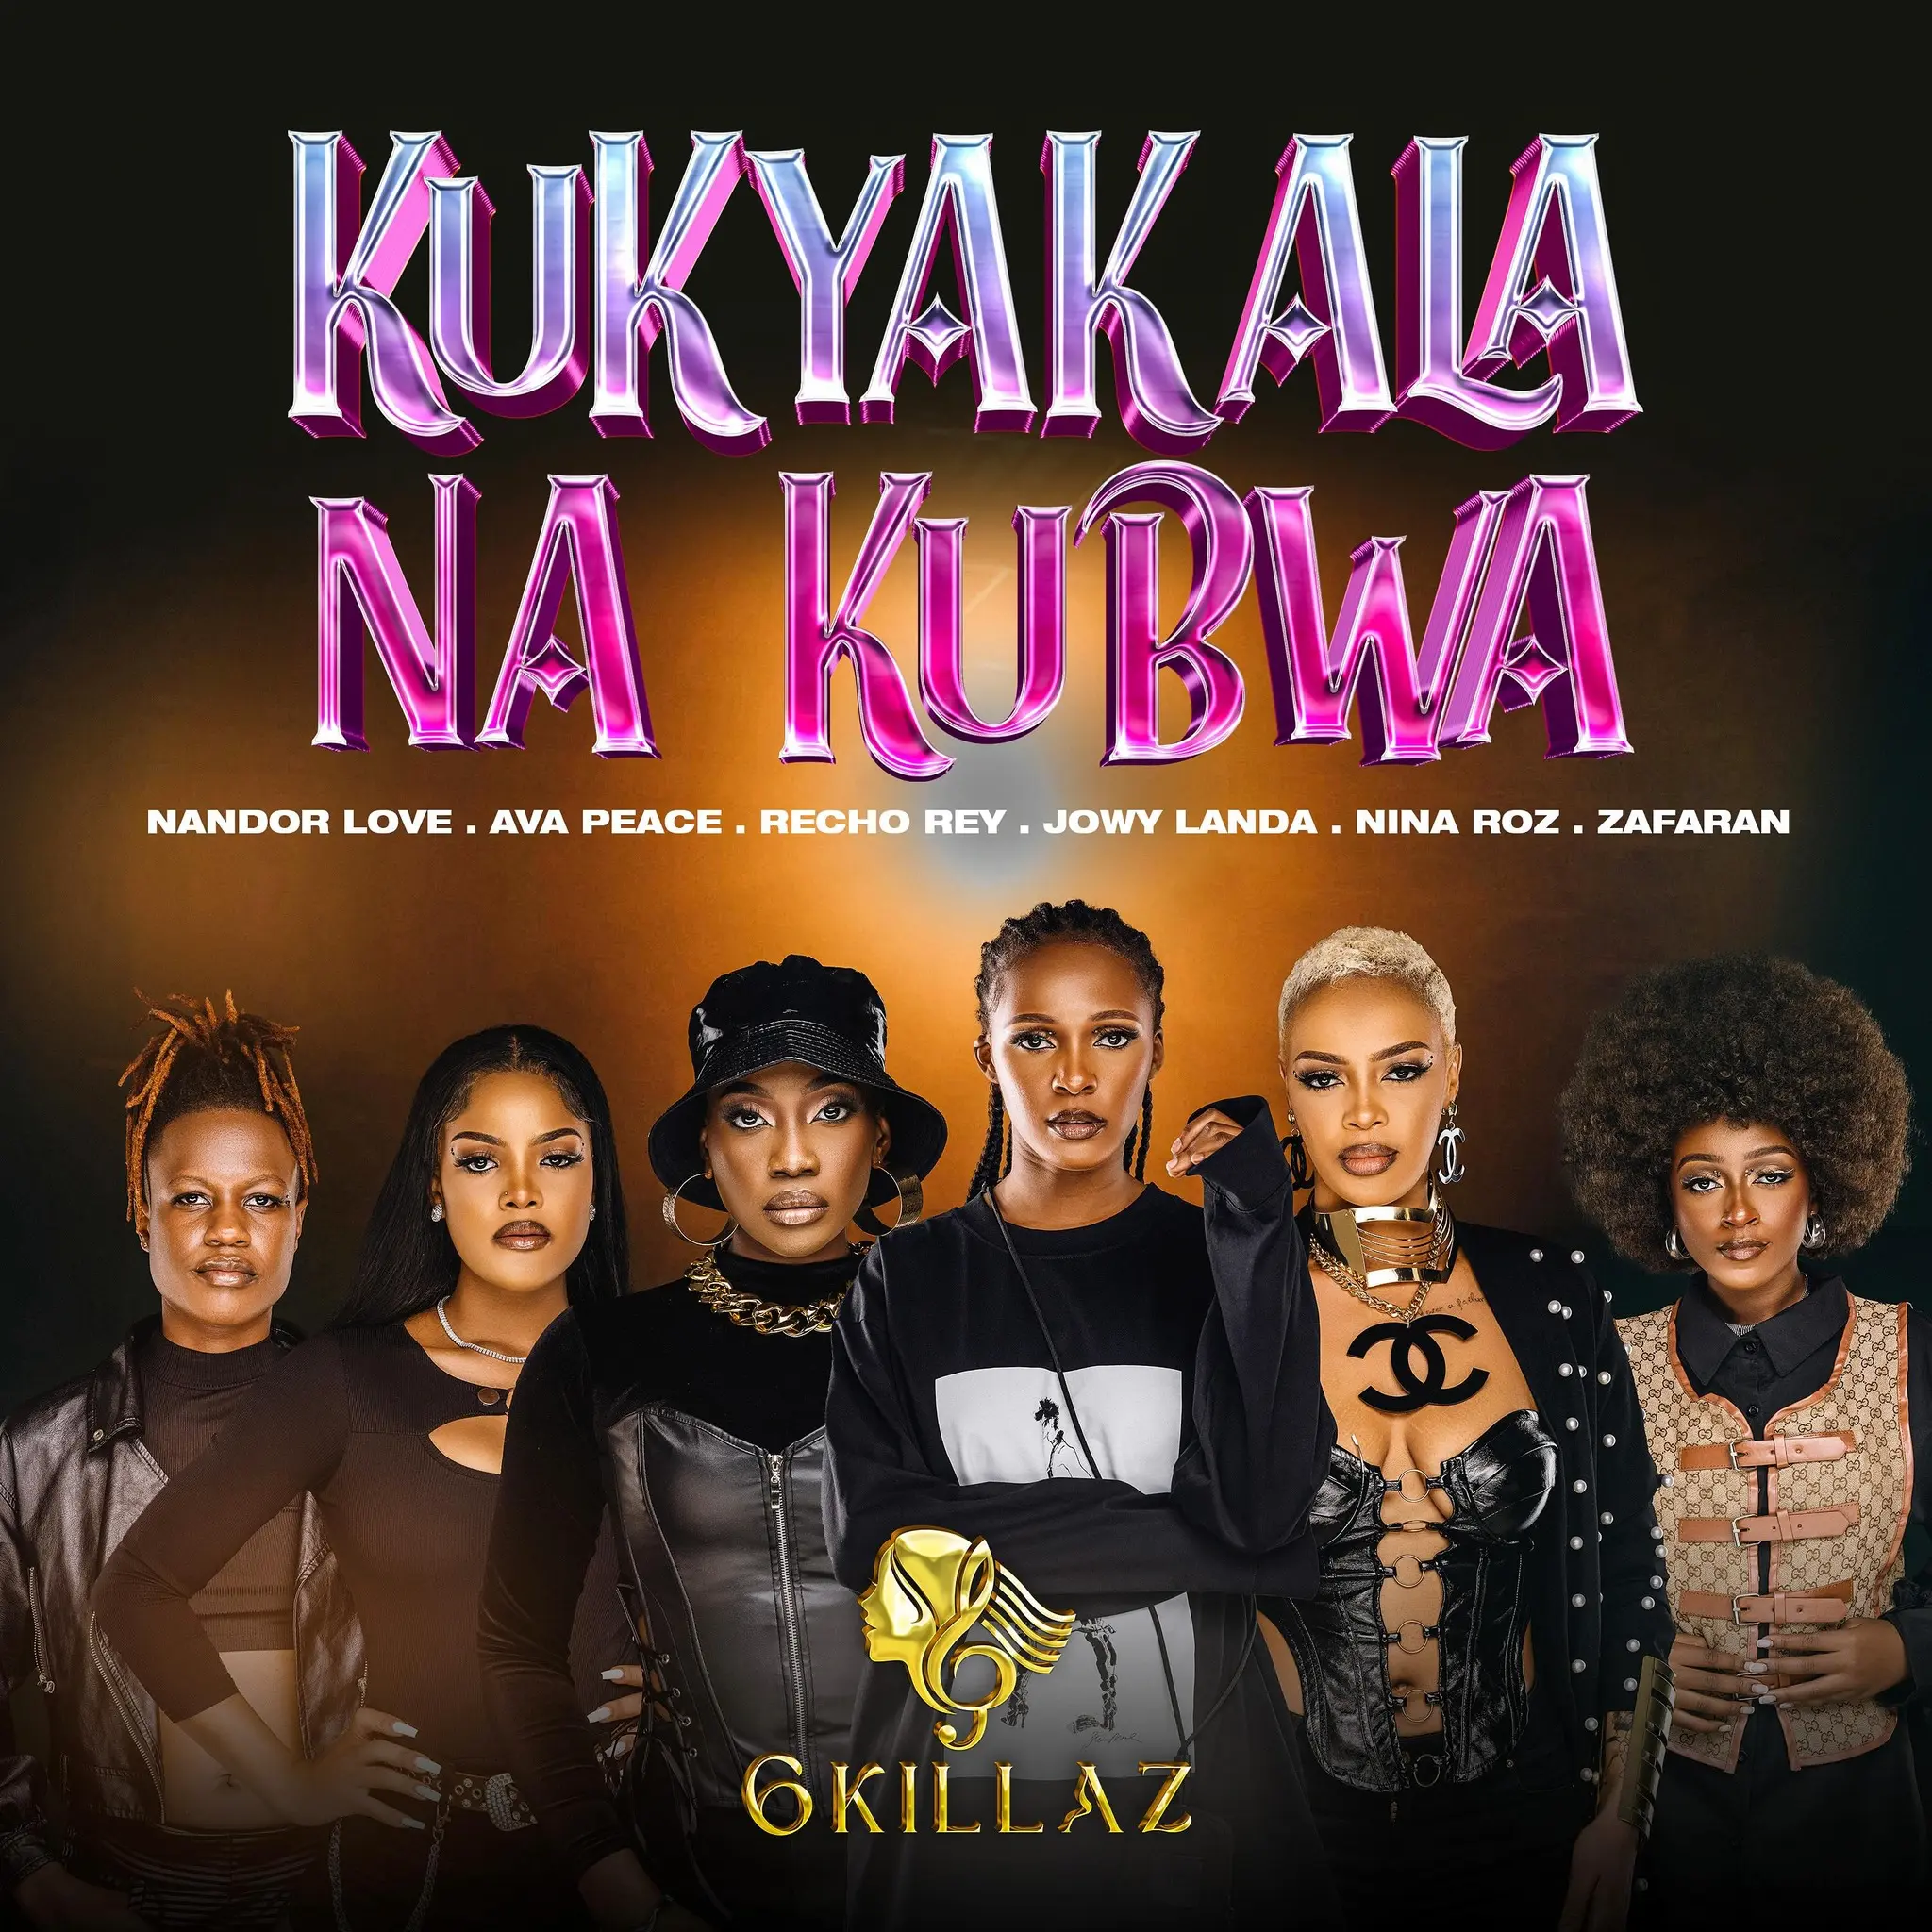 ava-peace-kukyakala-nakubwa-album-cover